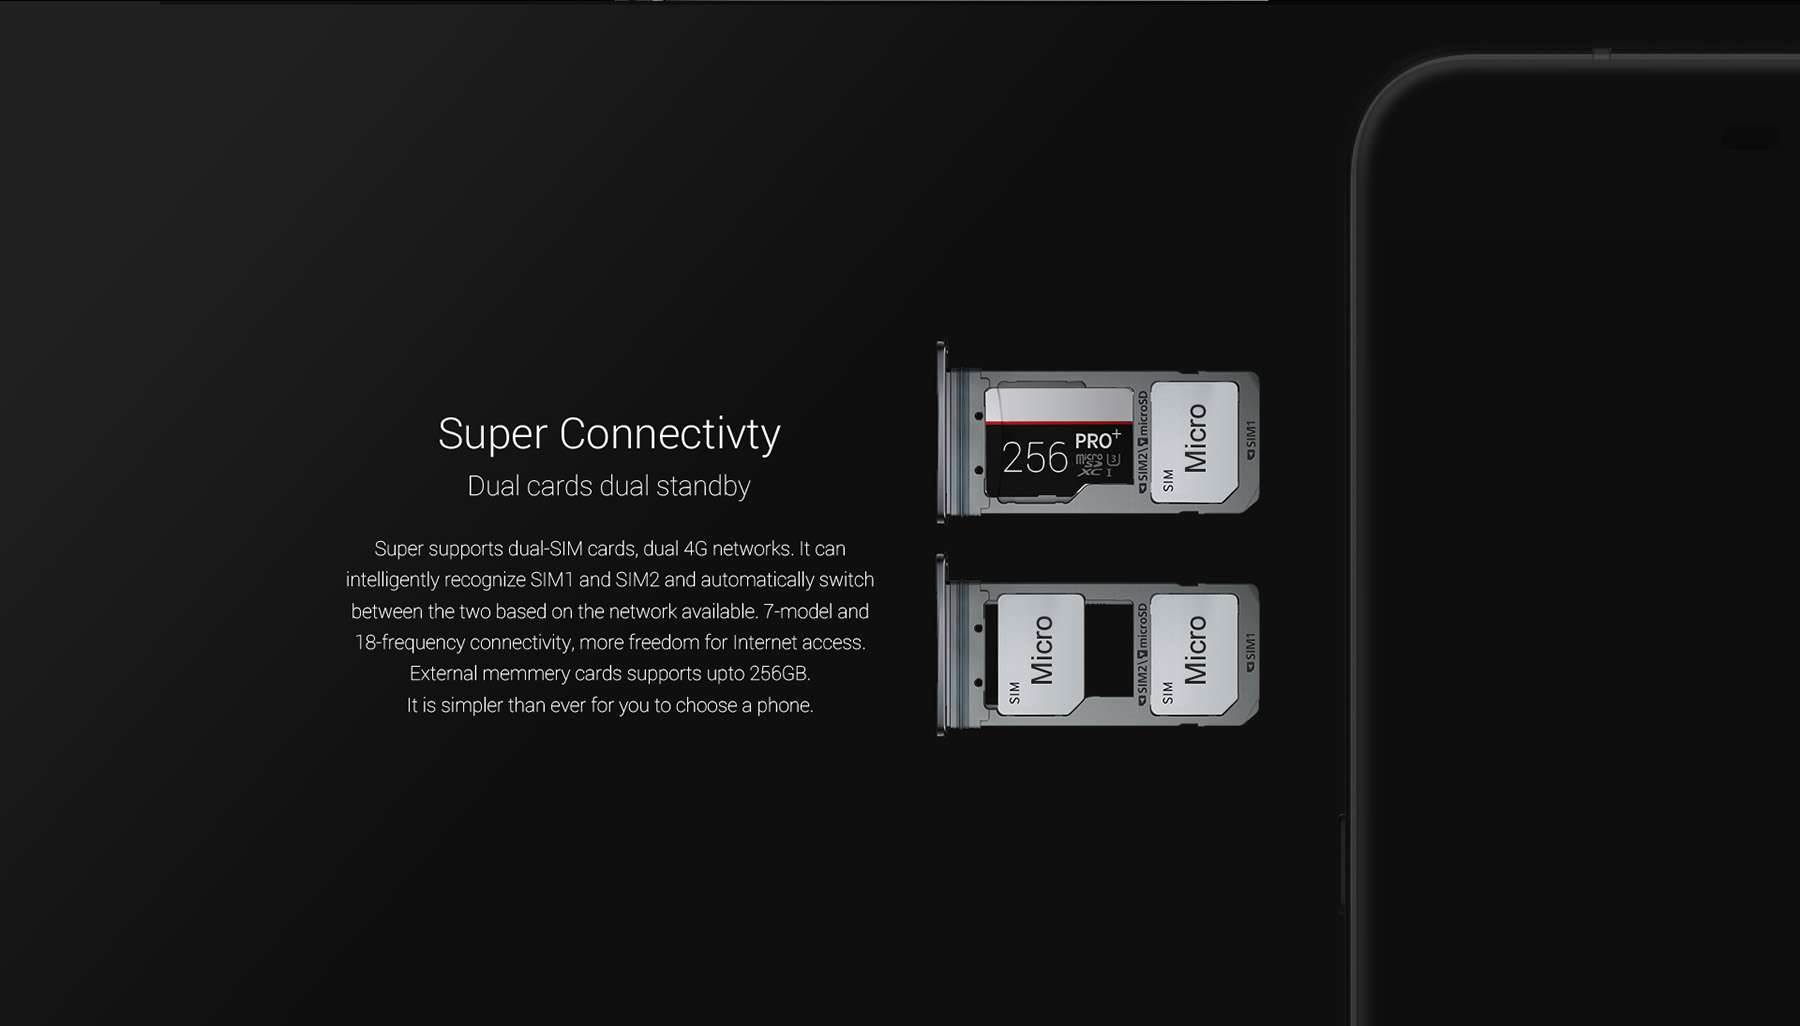 Smartfon UMI Super dostępny w niższej cenie ciekawostki UMI Super, gdzie kupić UMI Super, cena UMI Super  Xiaomi Redmi 3 Pro to nie jedyny objęty wyprzedażą smartfon, kolejnym ciekawym kąskiem może okazać się UMI Super, który jest od niego trochę większy i wydaje się lepszym wyborem dla osób niezważających na rozmiary smartfonu. 1463197987624601